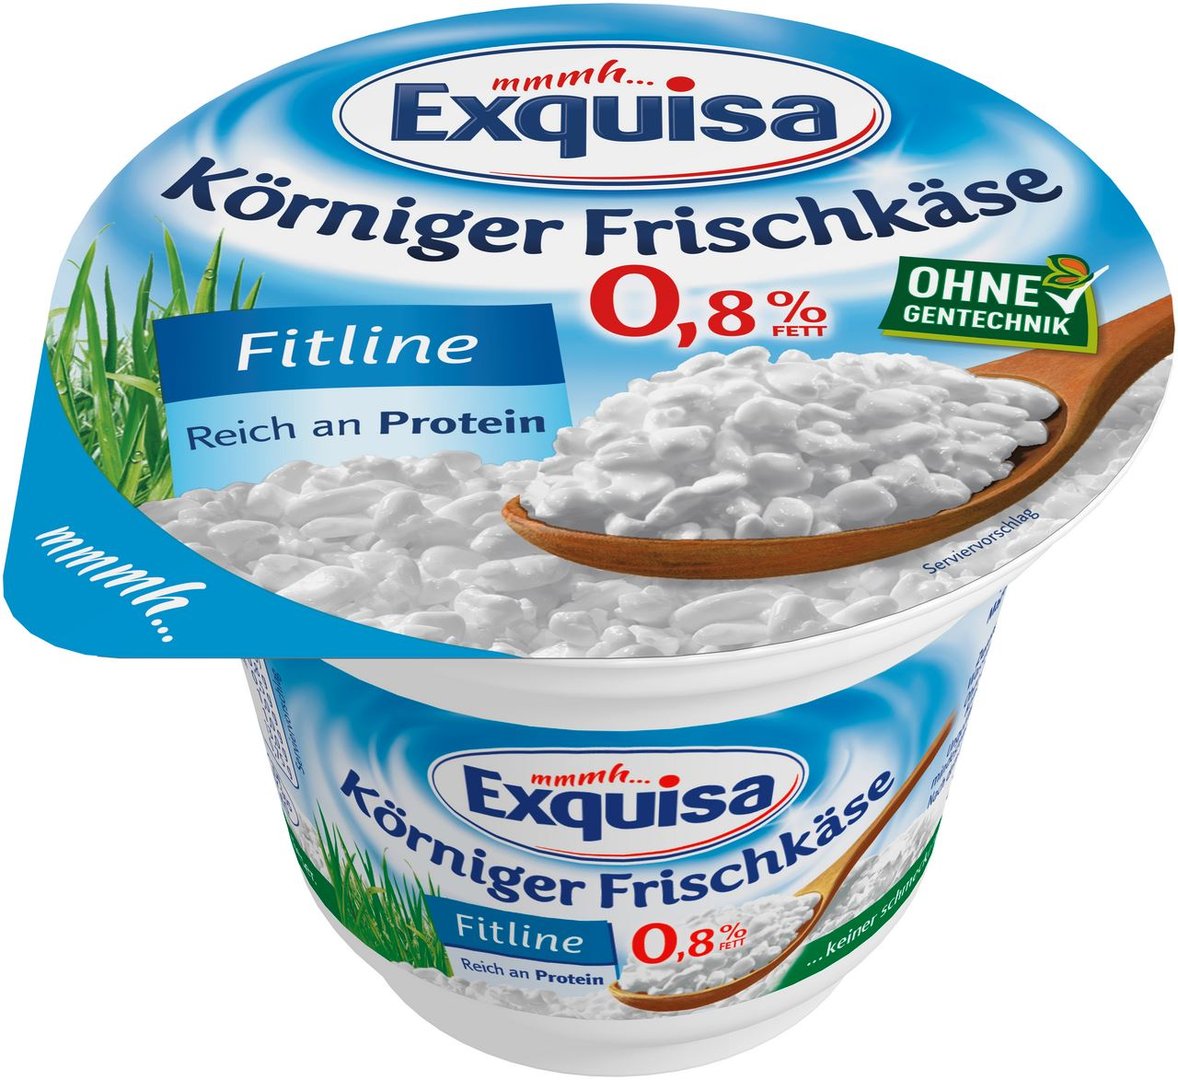 Exquisa - Körniger Frischkäse Fitline 0,8 % Fett - 1 x 200 g Becher